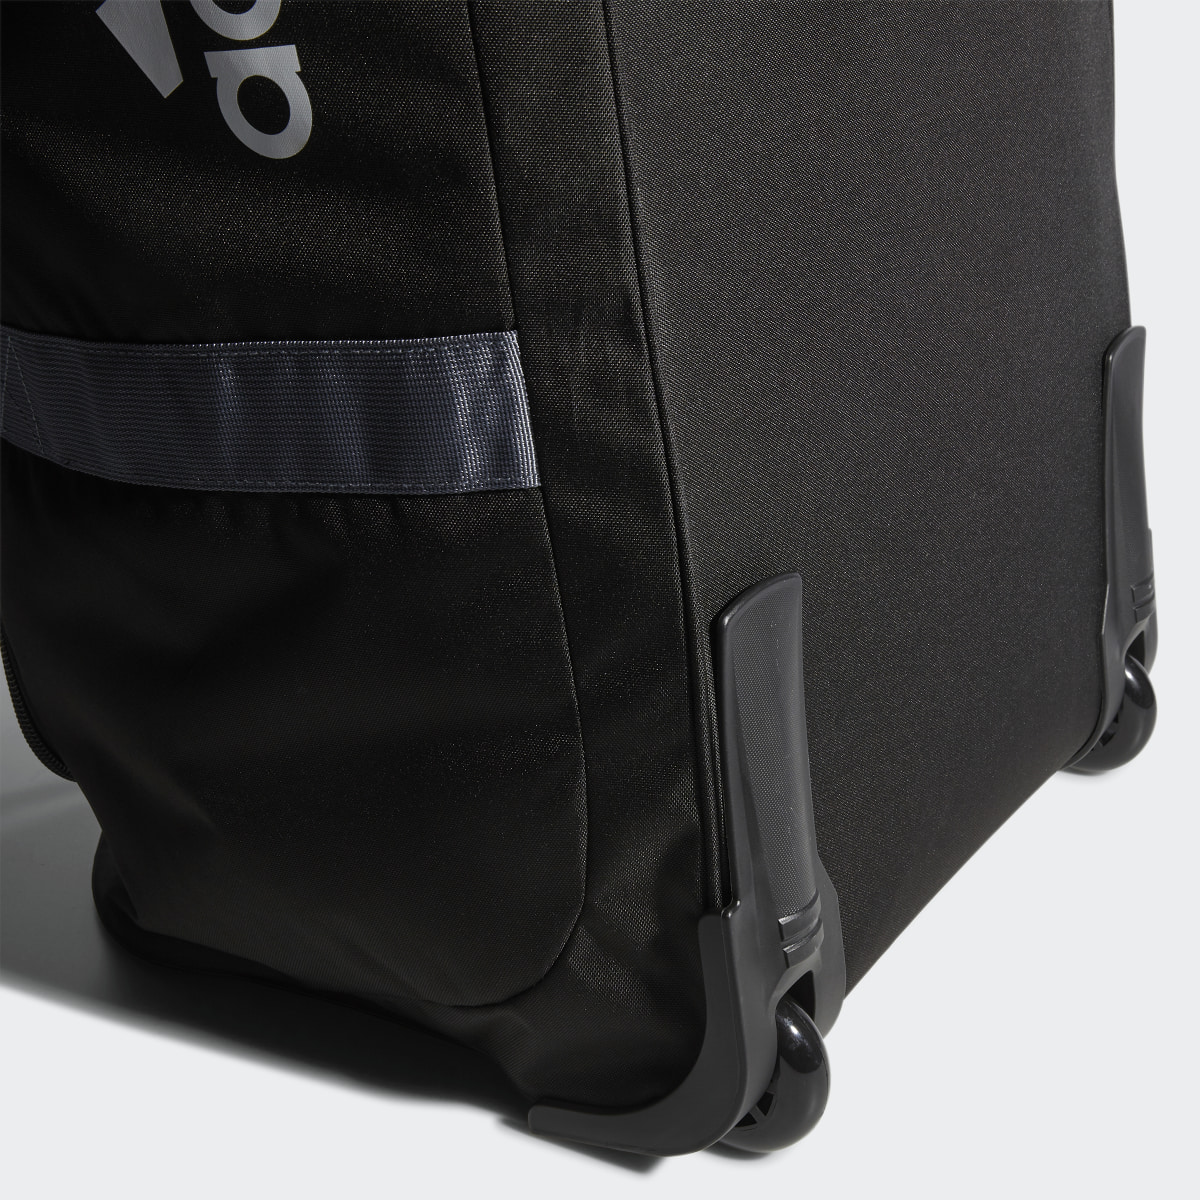 Adidas Team Wheel Bag XL. 7